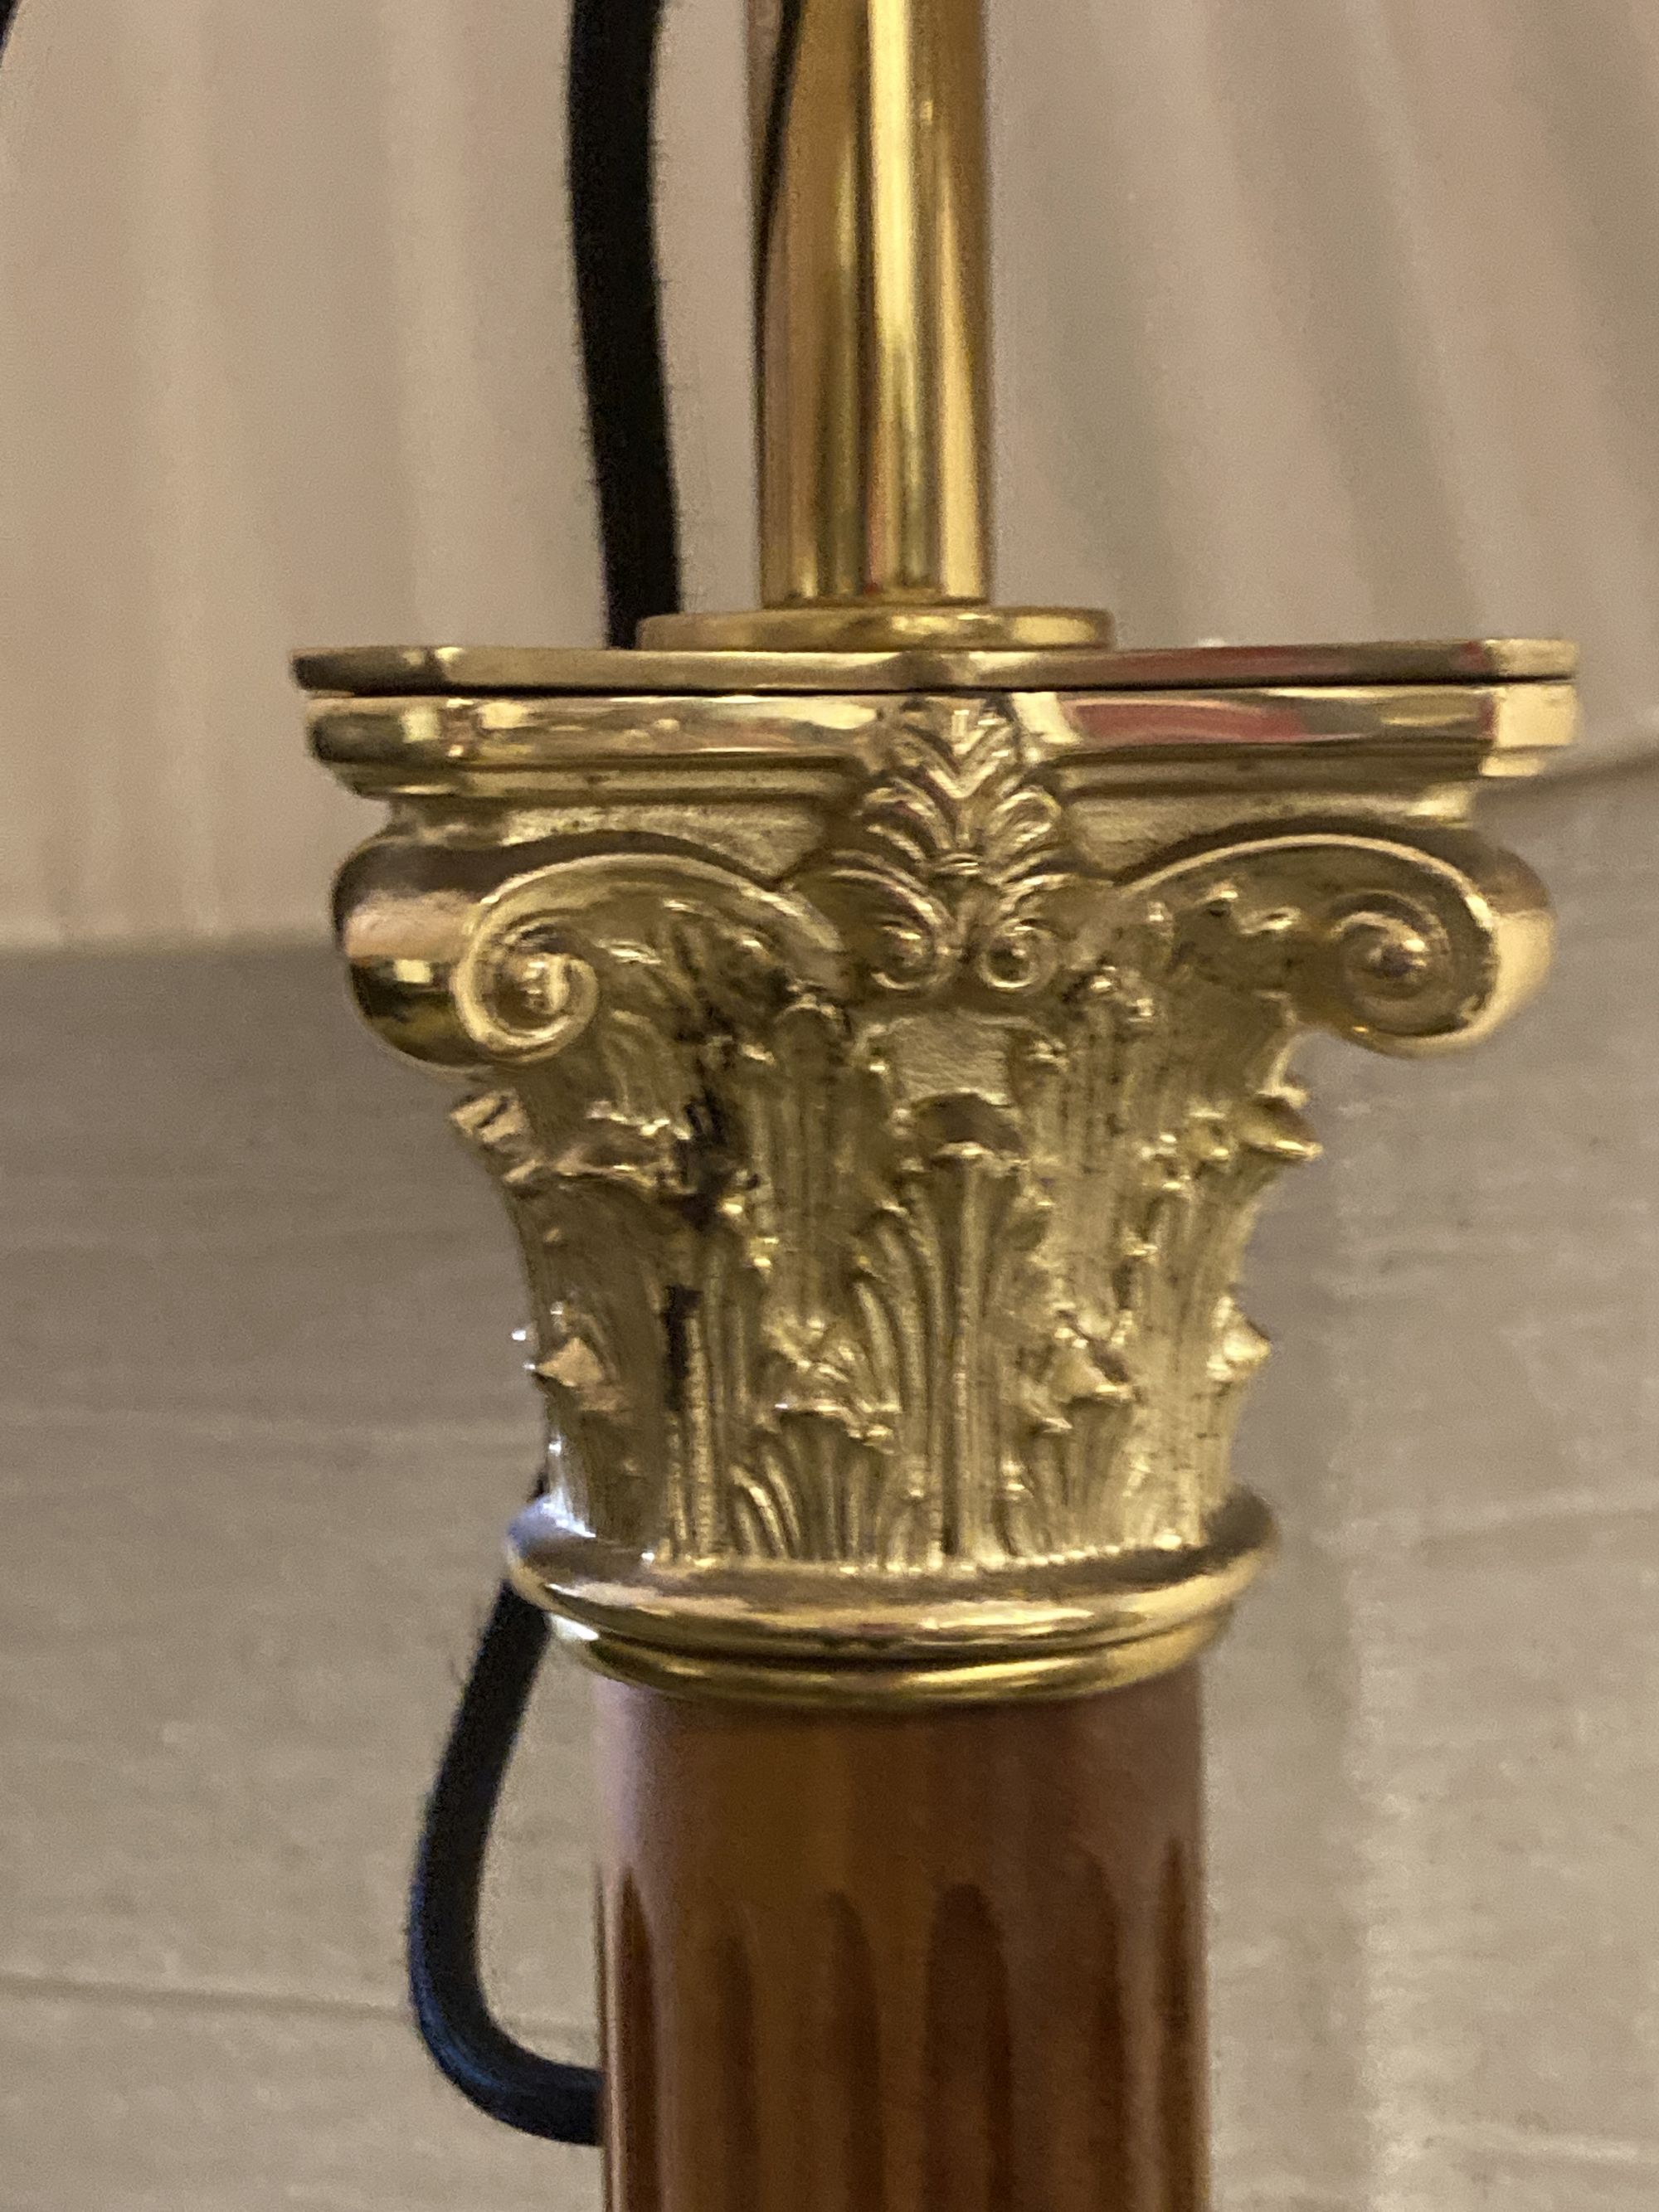 A brass mounted Linley lamp standard, height 154cm